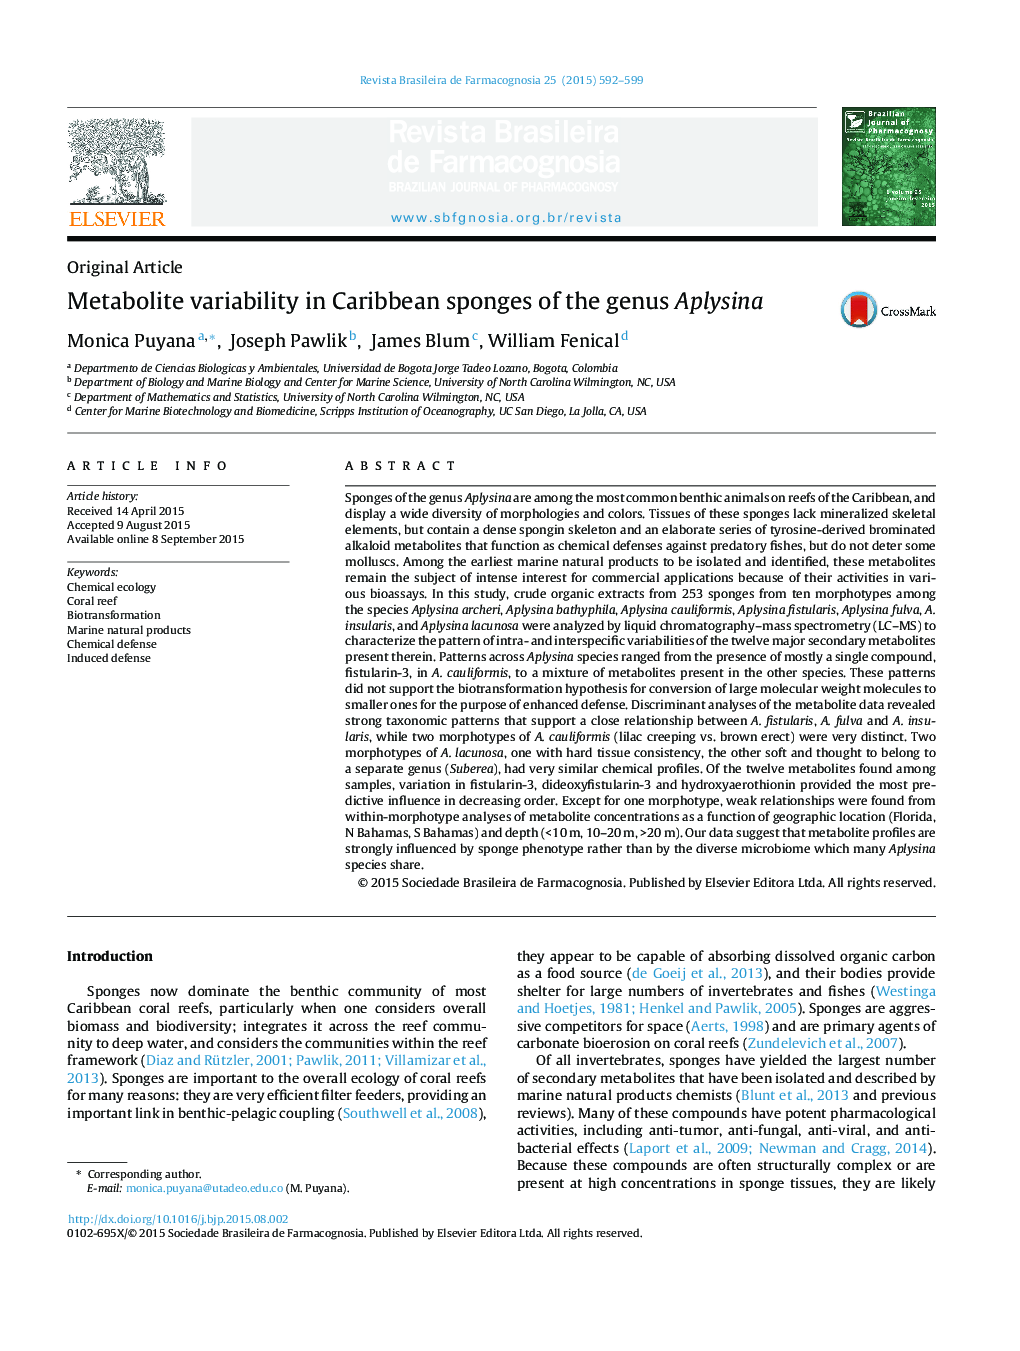 Metabolite variability in Caribbean sponges of the genus Aplysina